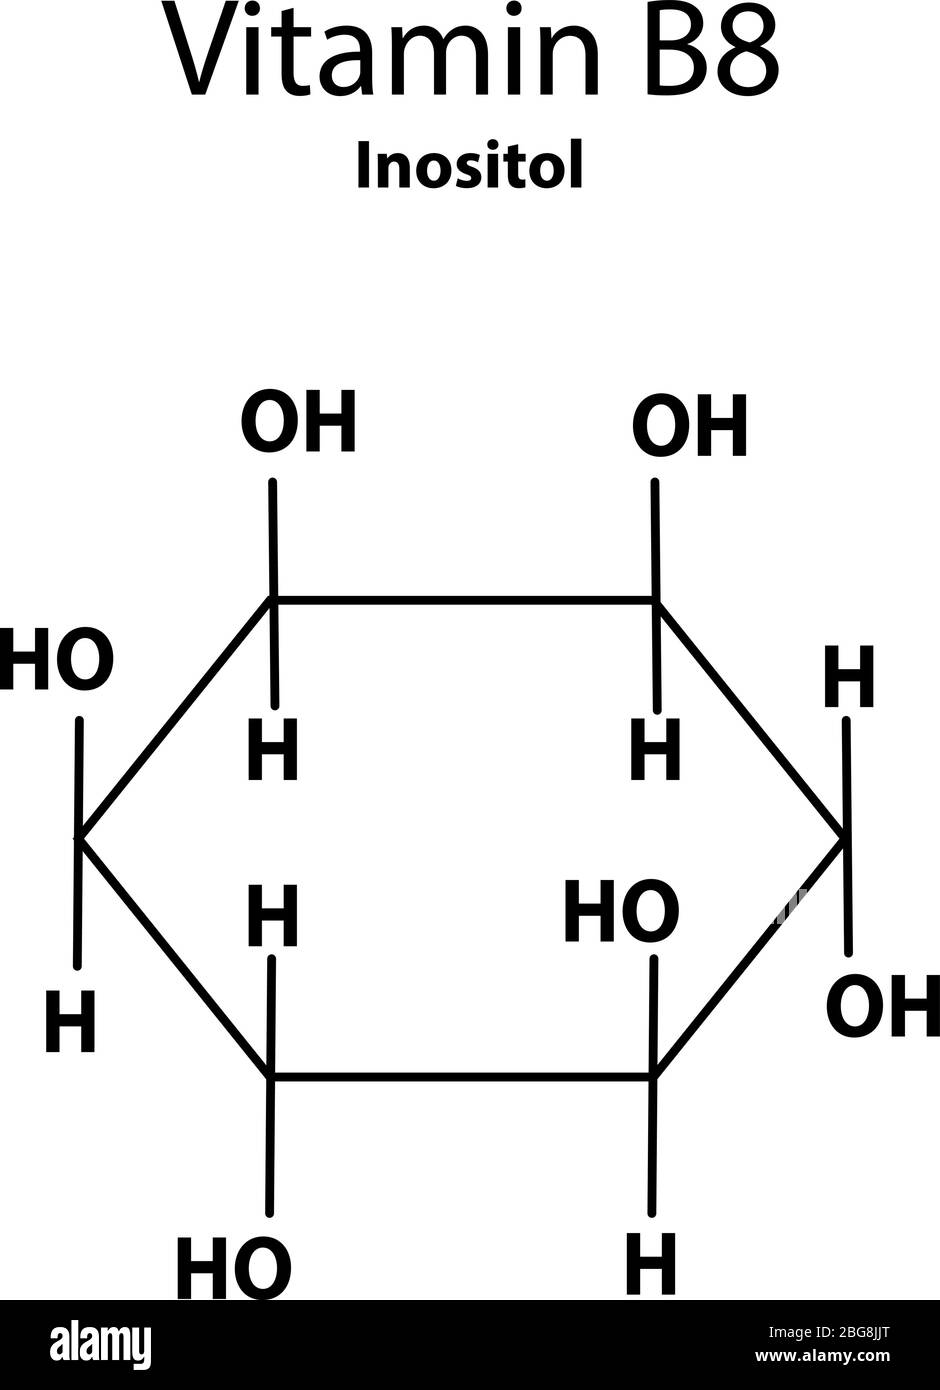 Vitamine B 8. Inositol Formule chimique moléculaire. Infographies.  Illustration vectorielle sur un arrière-plan isolé Image Vectorielle Stock  - Alamy